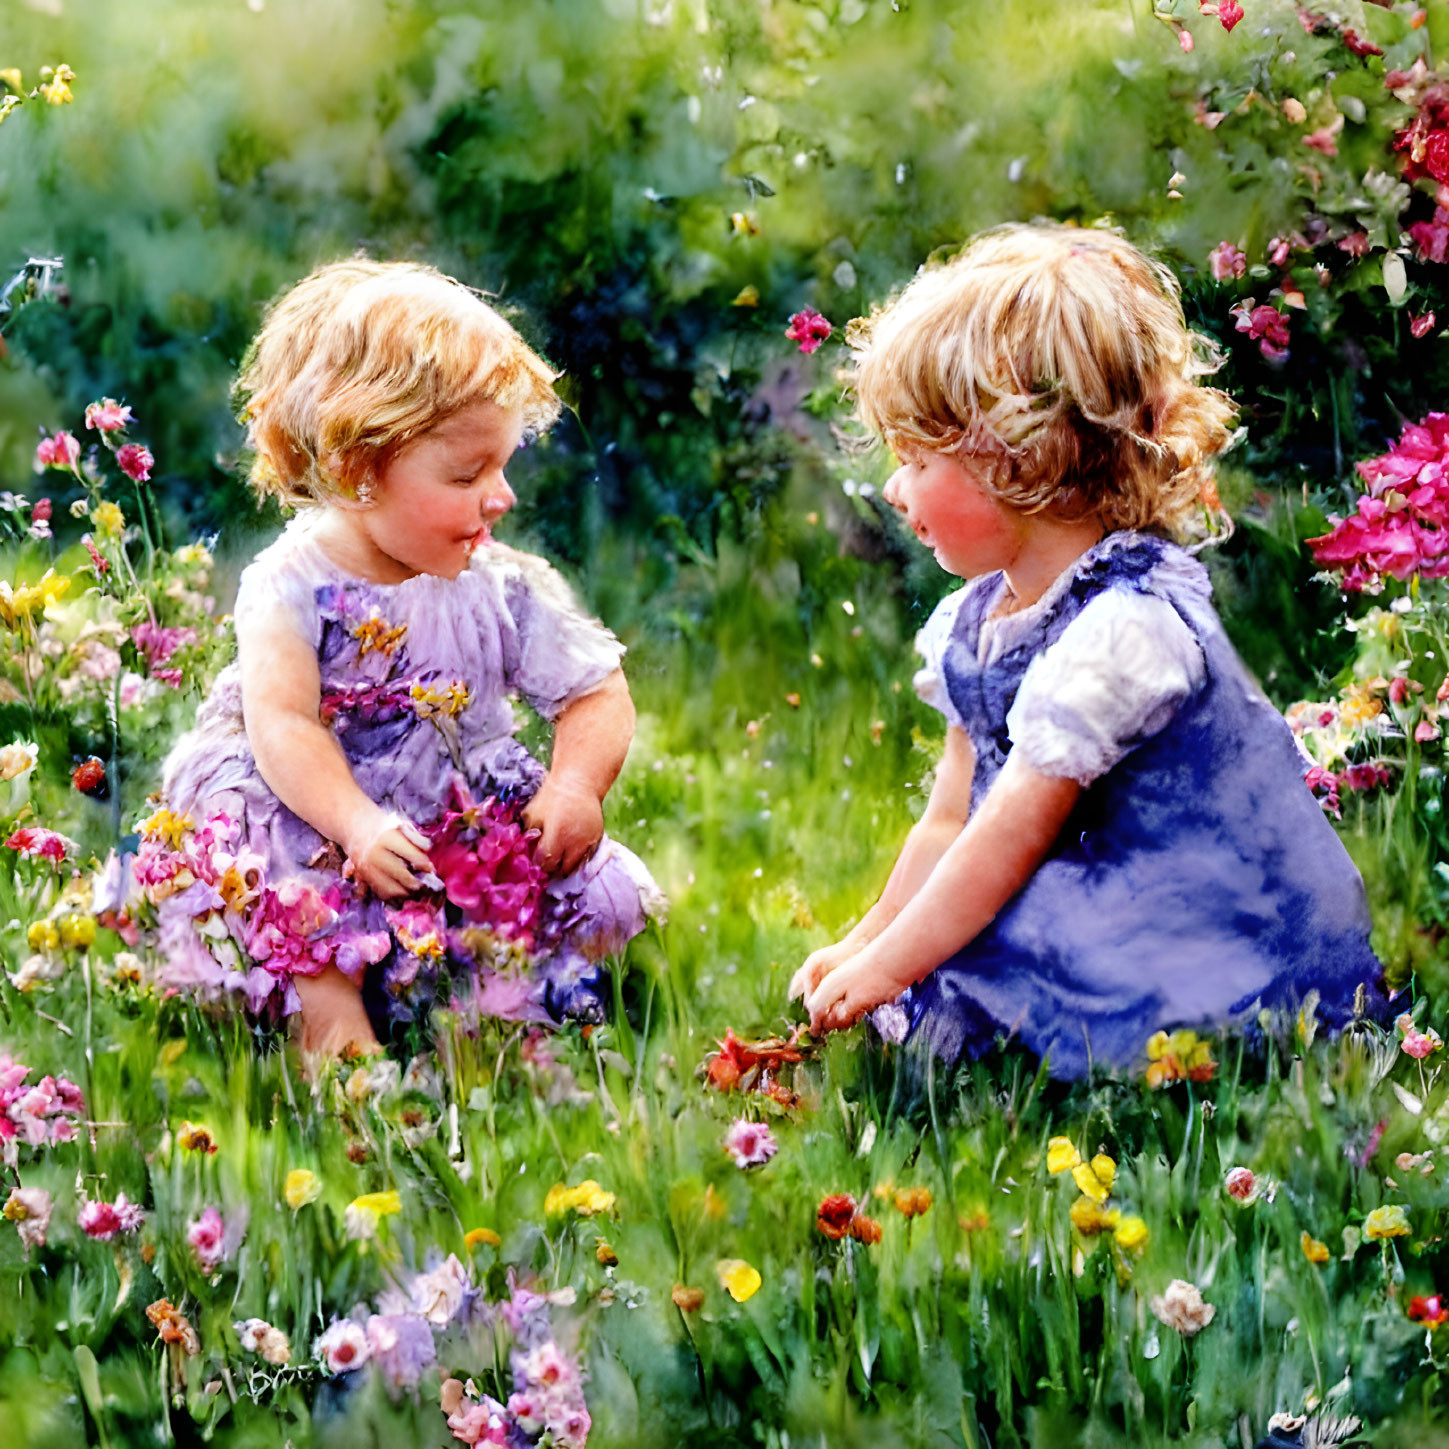 Children in colorful dresses in vibrant flower garden reaching for flowers